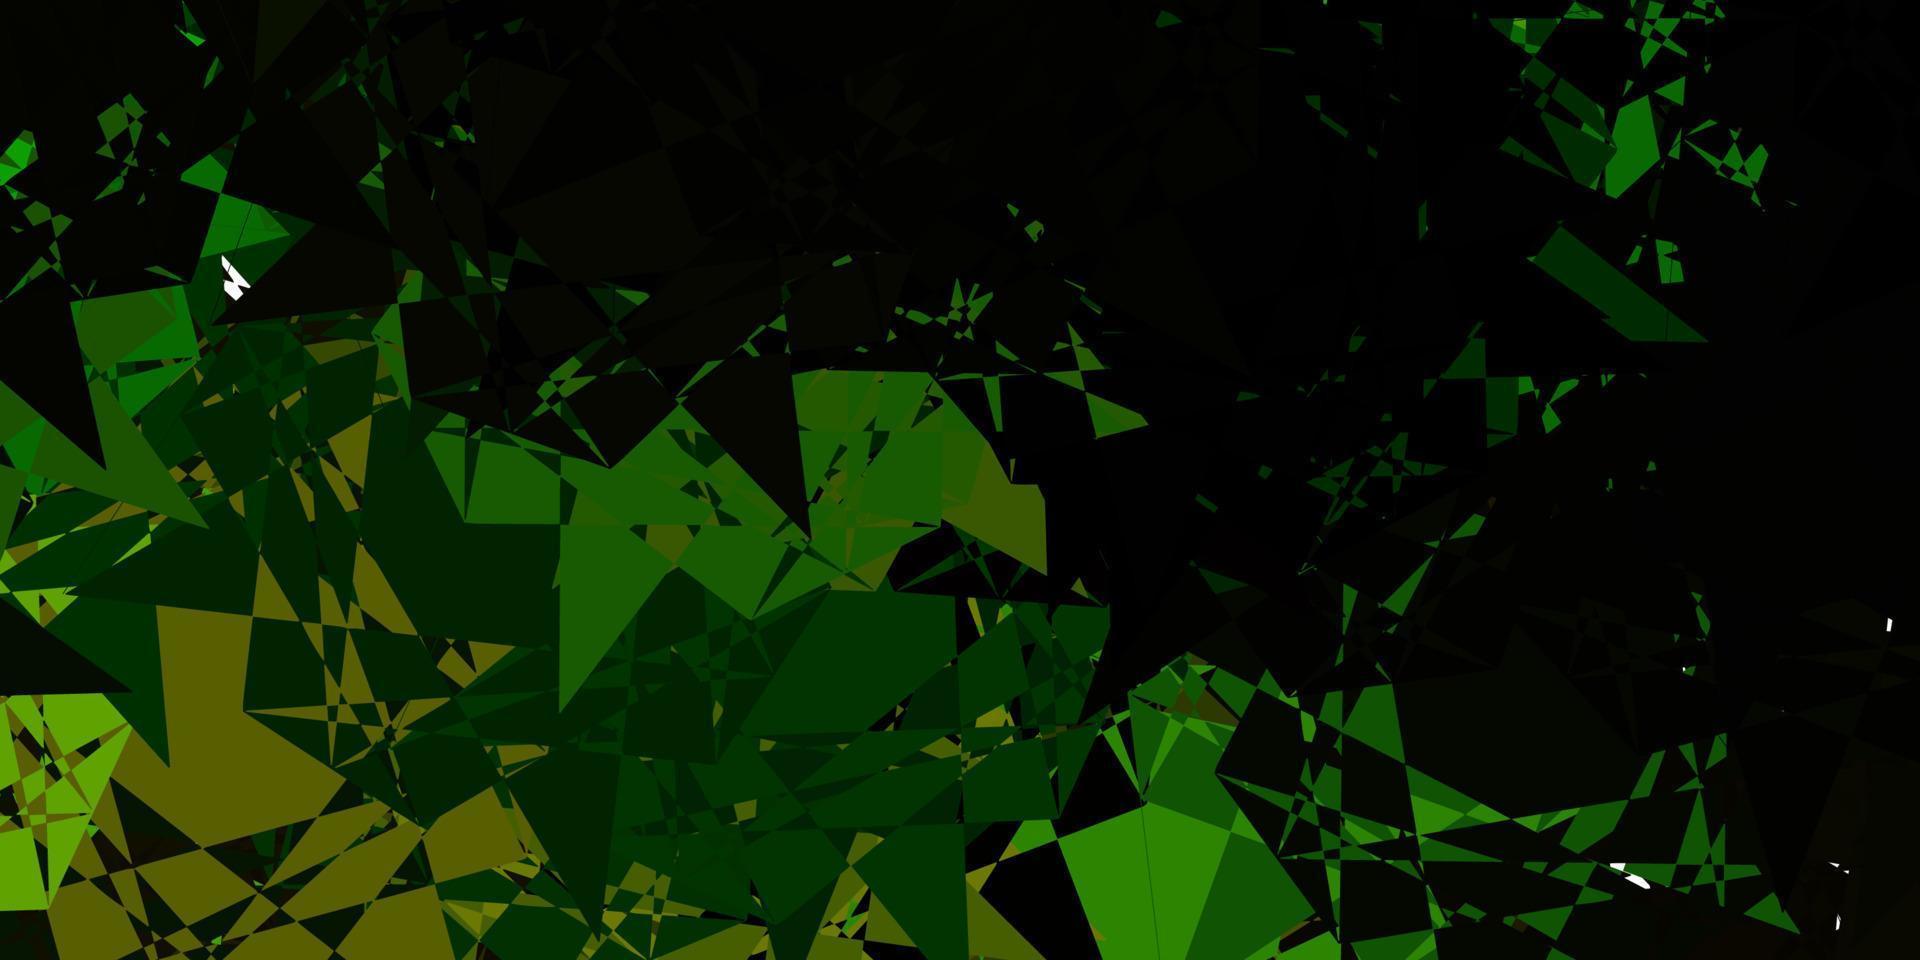 mörkgrön, gul vektormall med triangelformer. vektor